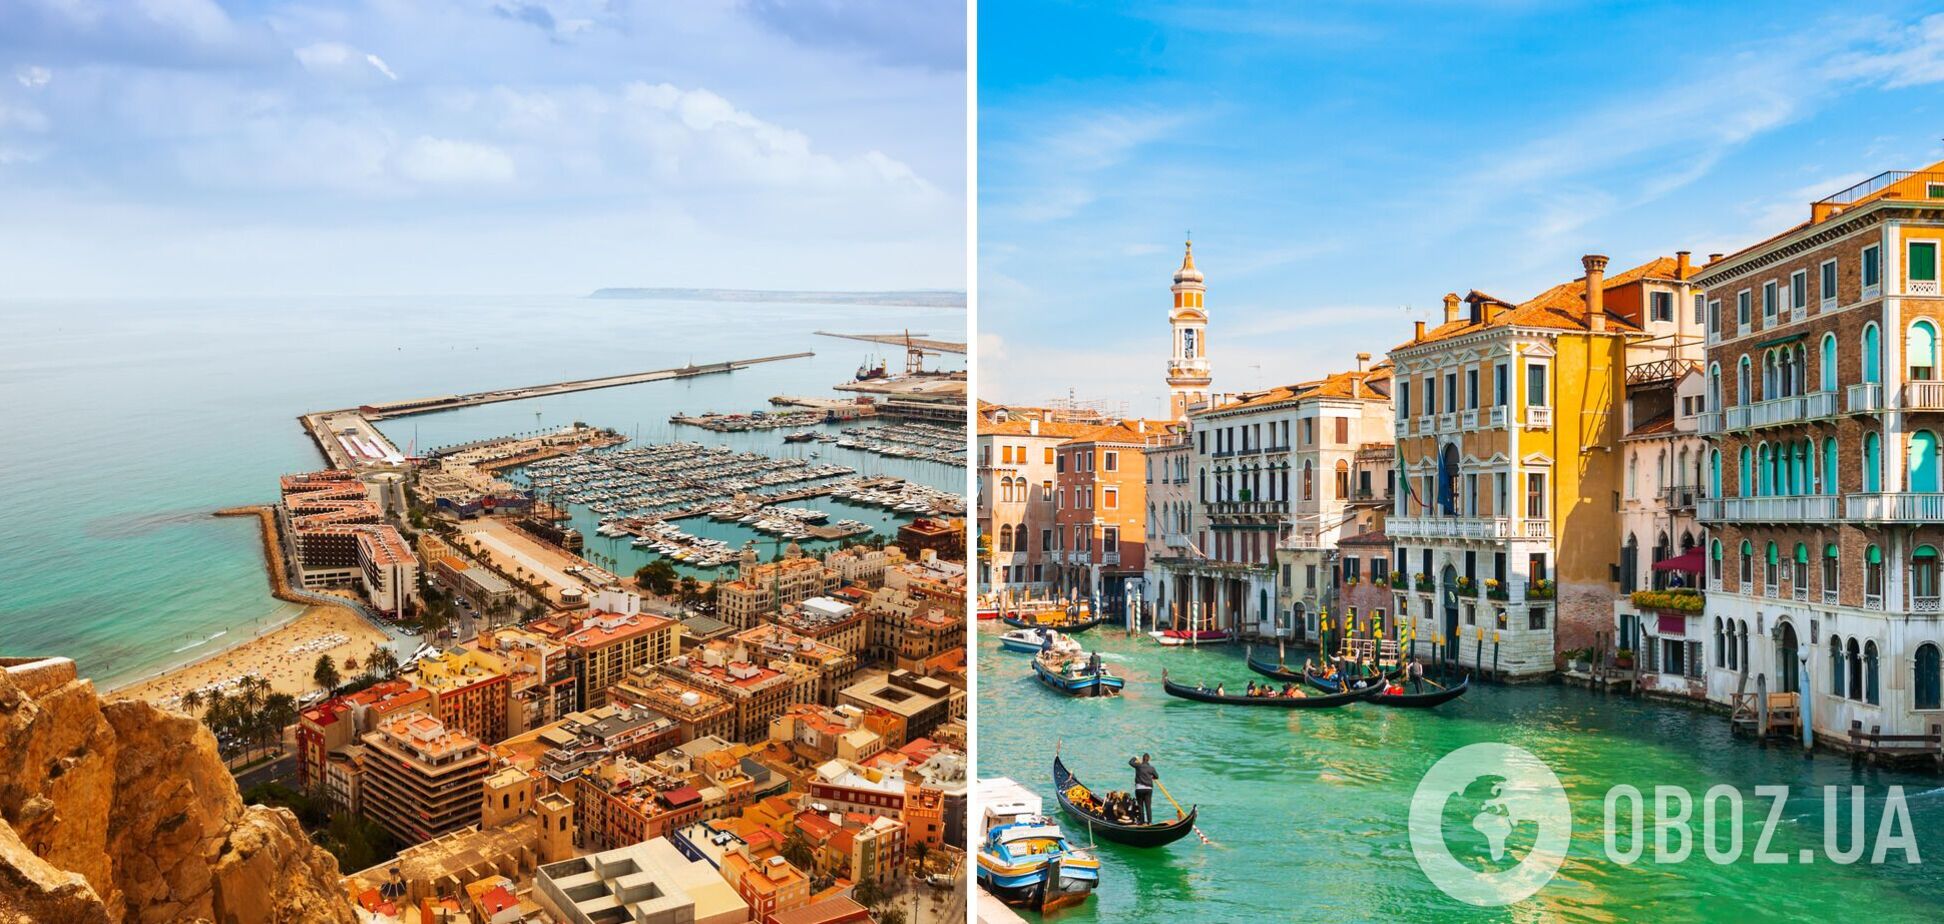 Италия и Испания: какие города и локации стоит посетить зимой